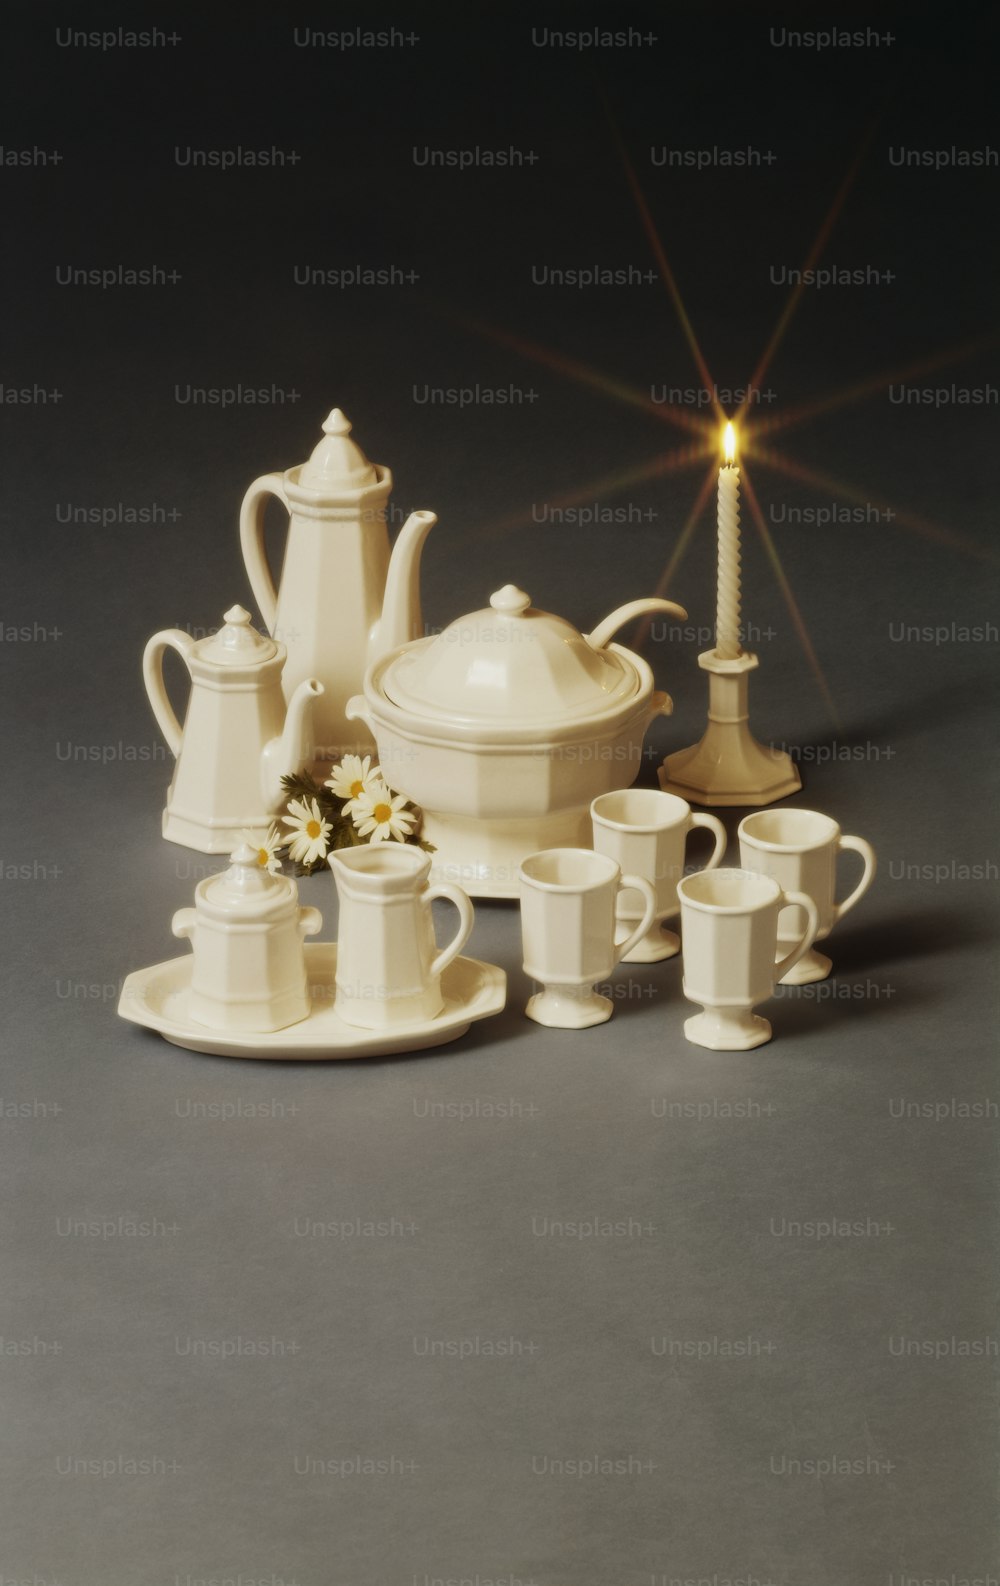 a tea set with a tea pot and cups